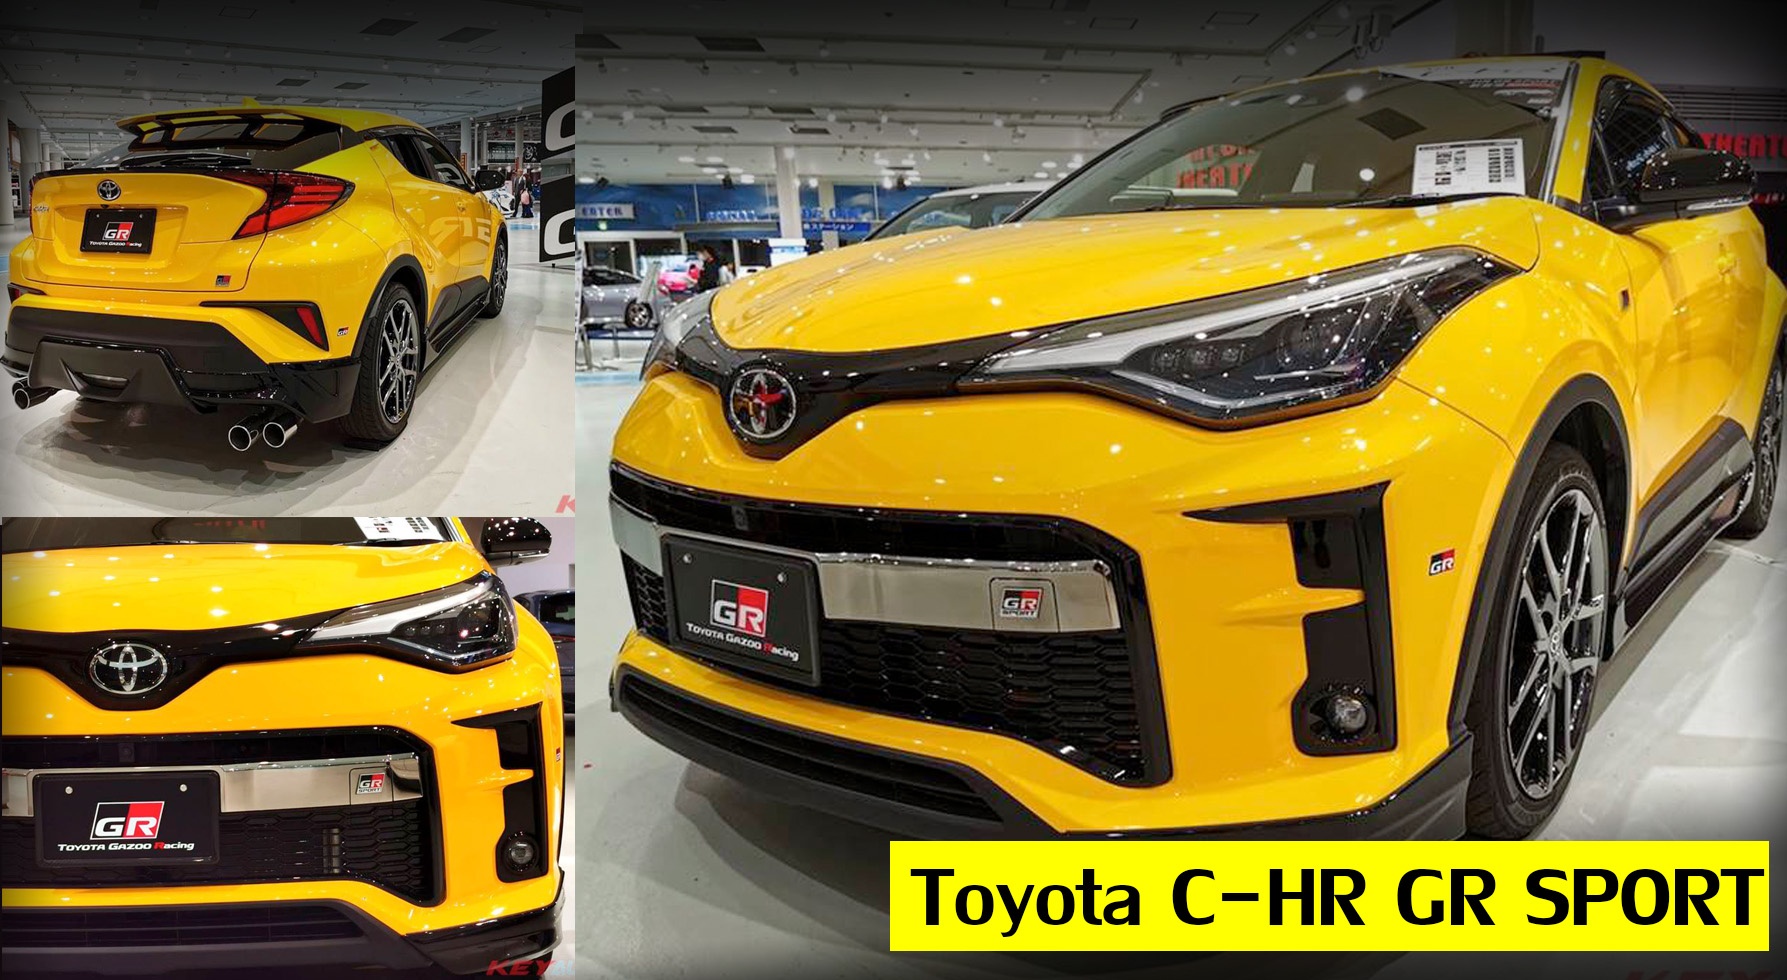 ภาพคันจริง! Toyota C-HR GR Sport ตัวถังสีเหลือง รุ่นแต่งพิเศษ